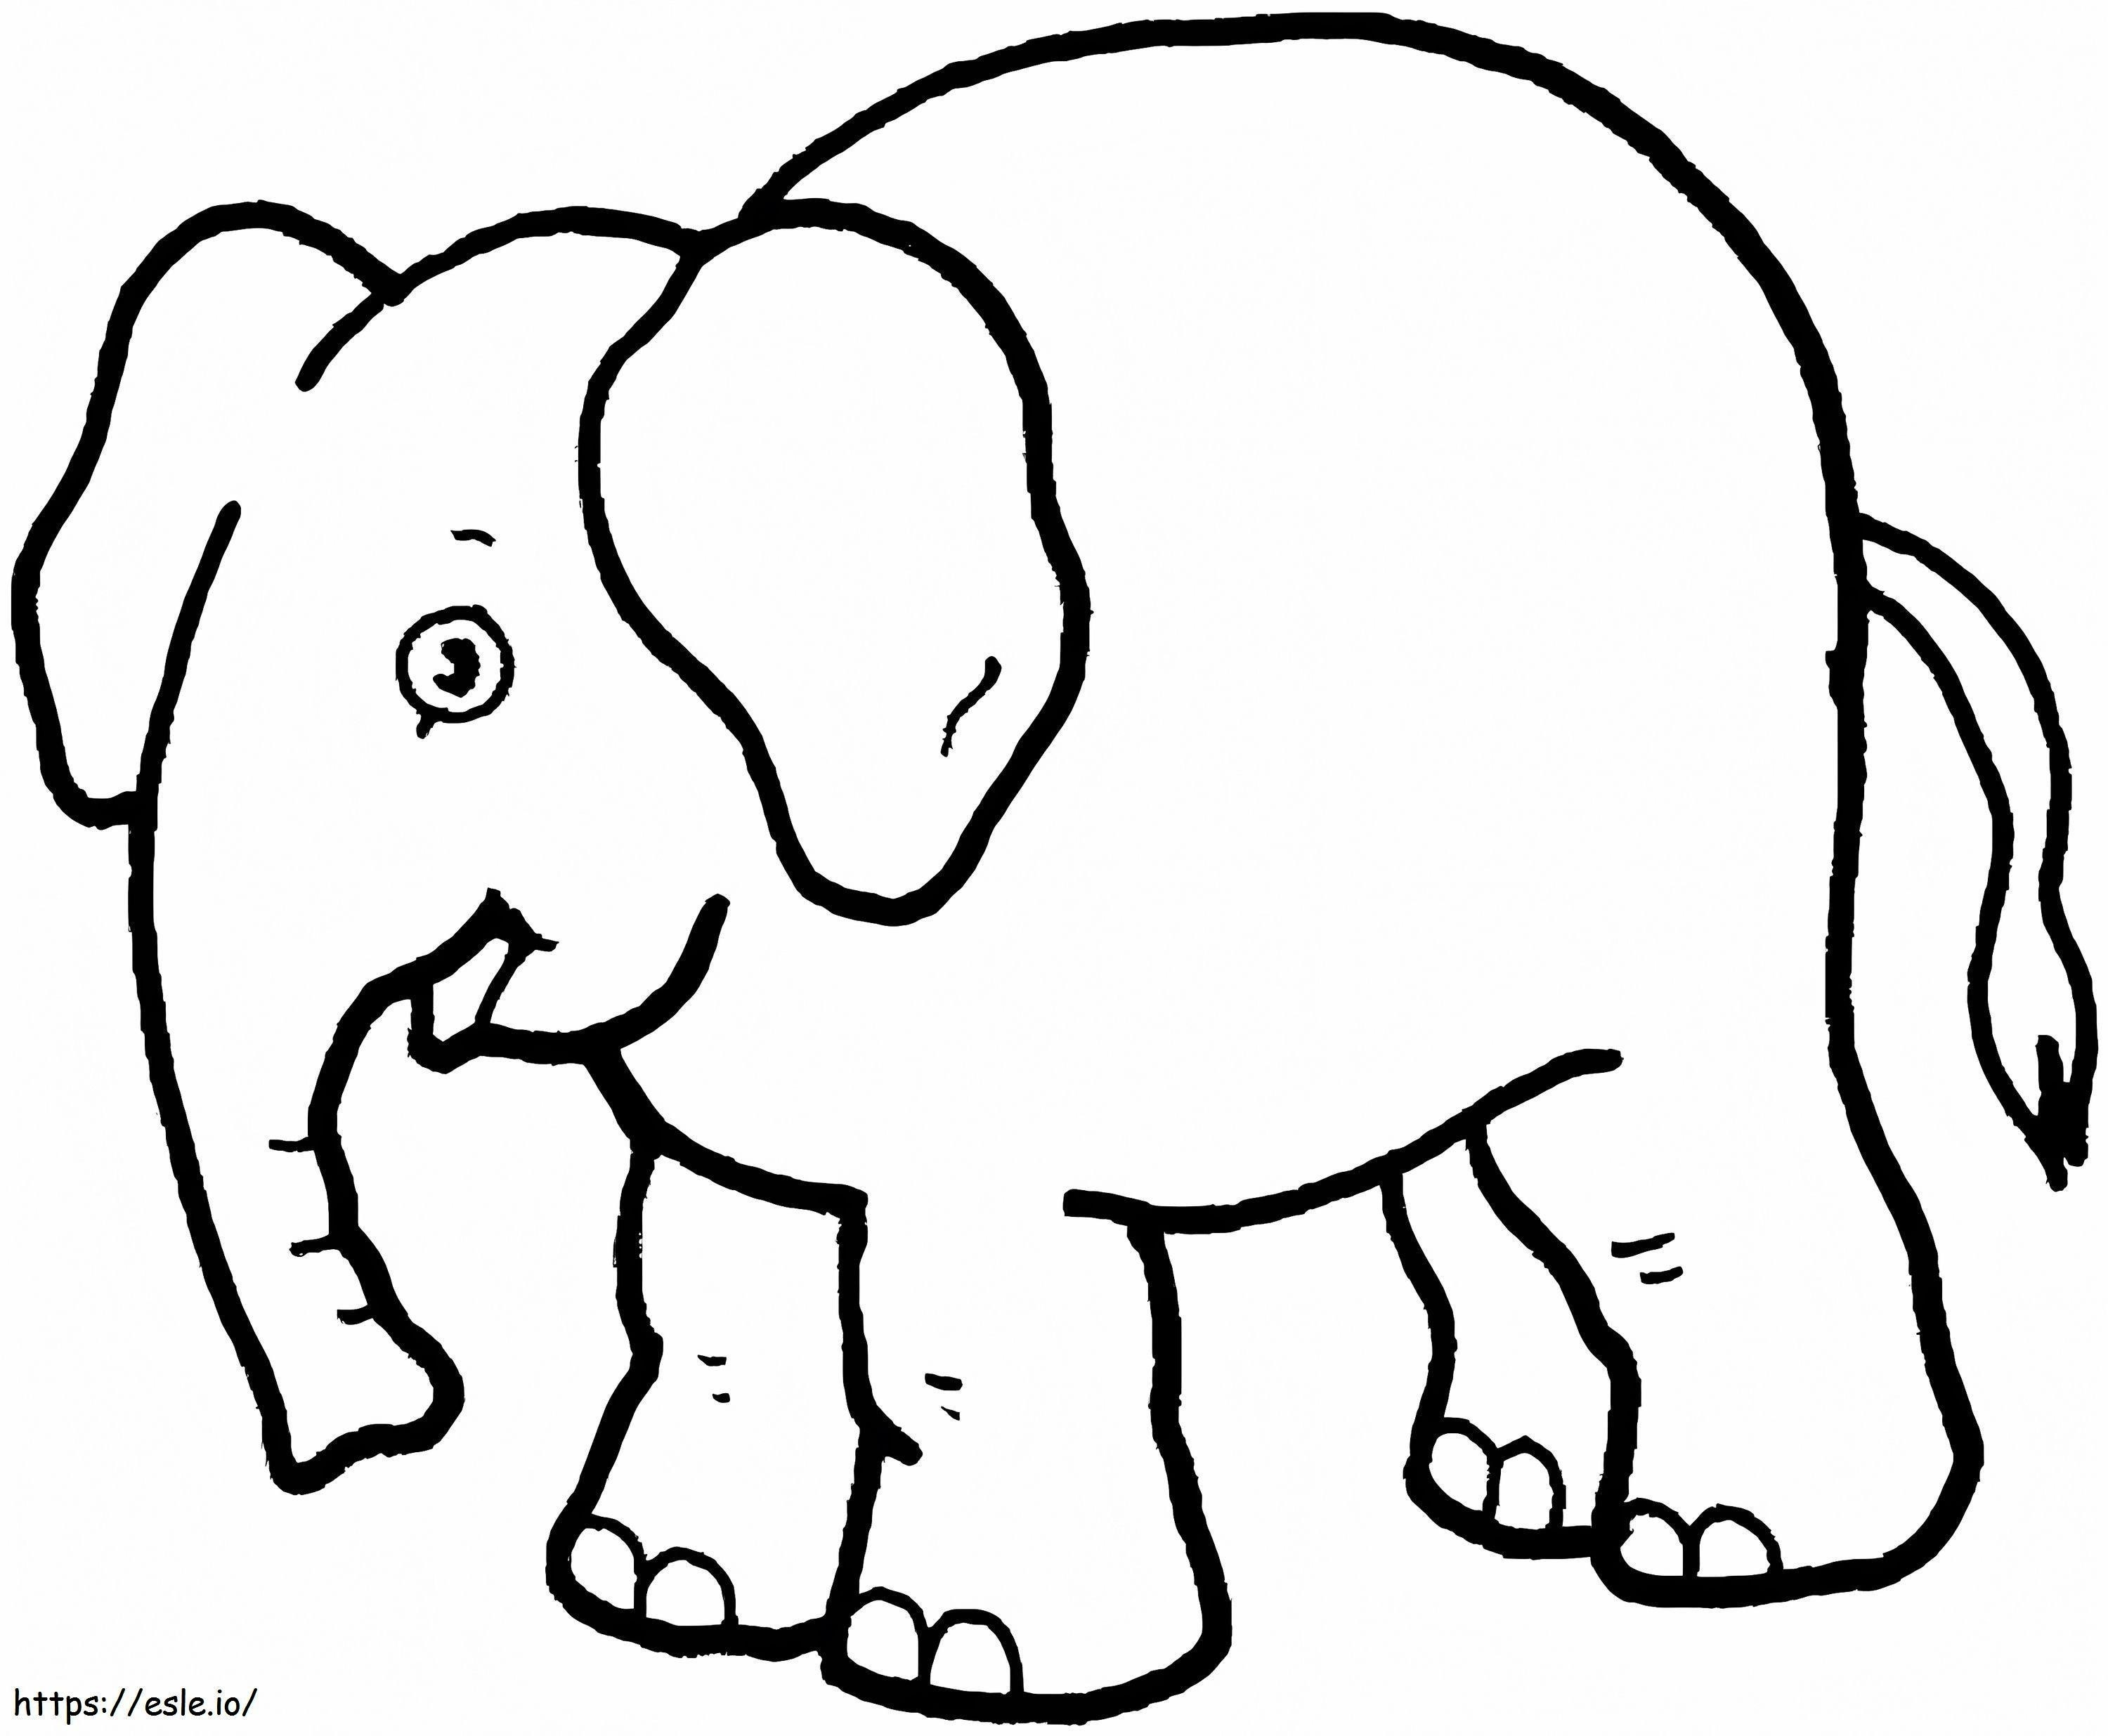 Ein lustiger Elefant ausmalbilder